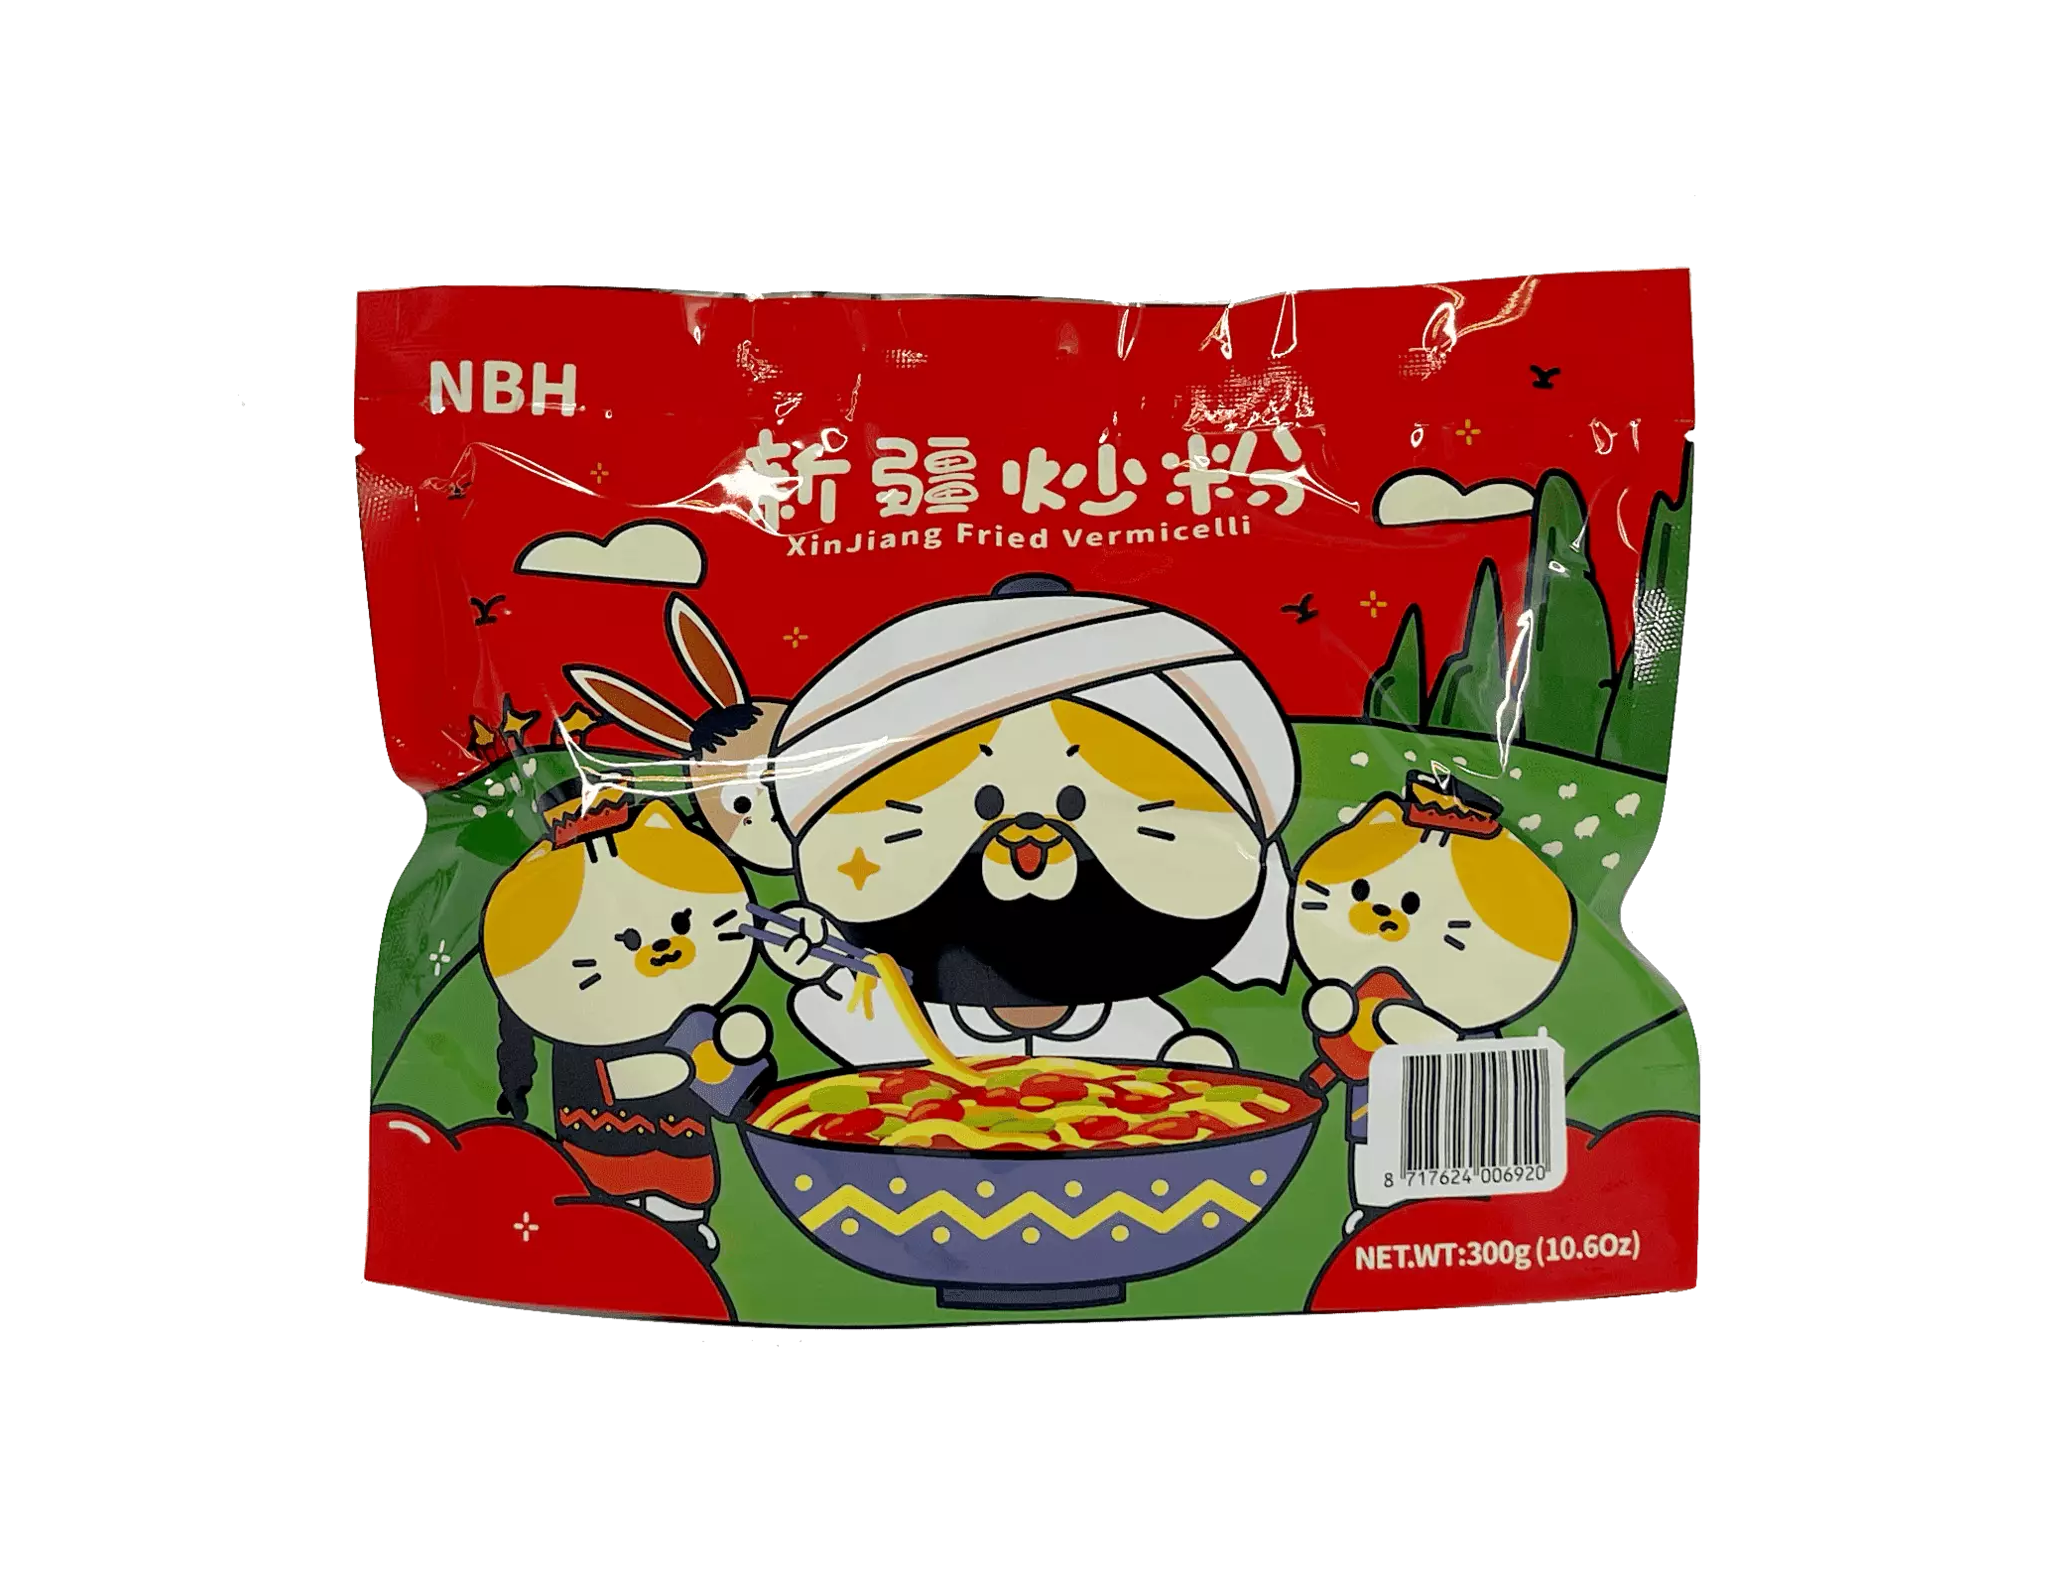 Xinjiang Fried Vermicelli 300g NBH Kina